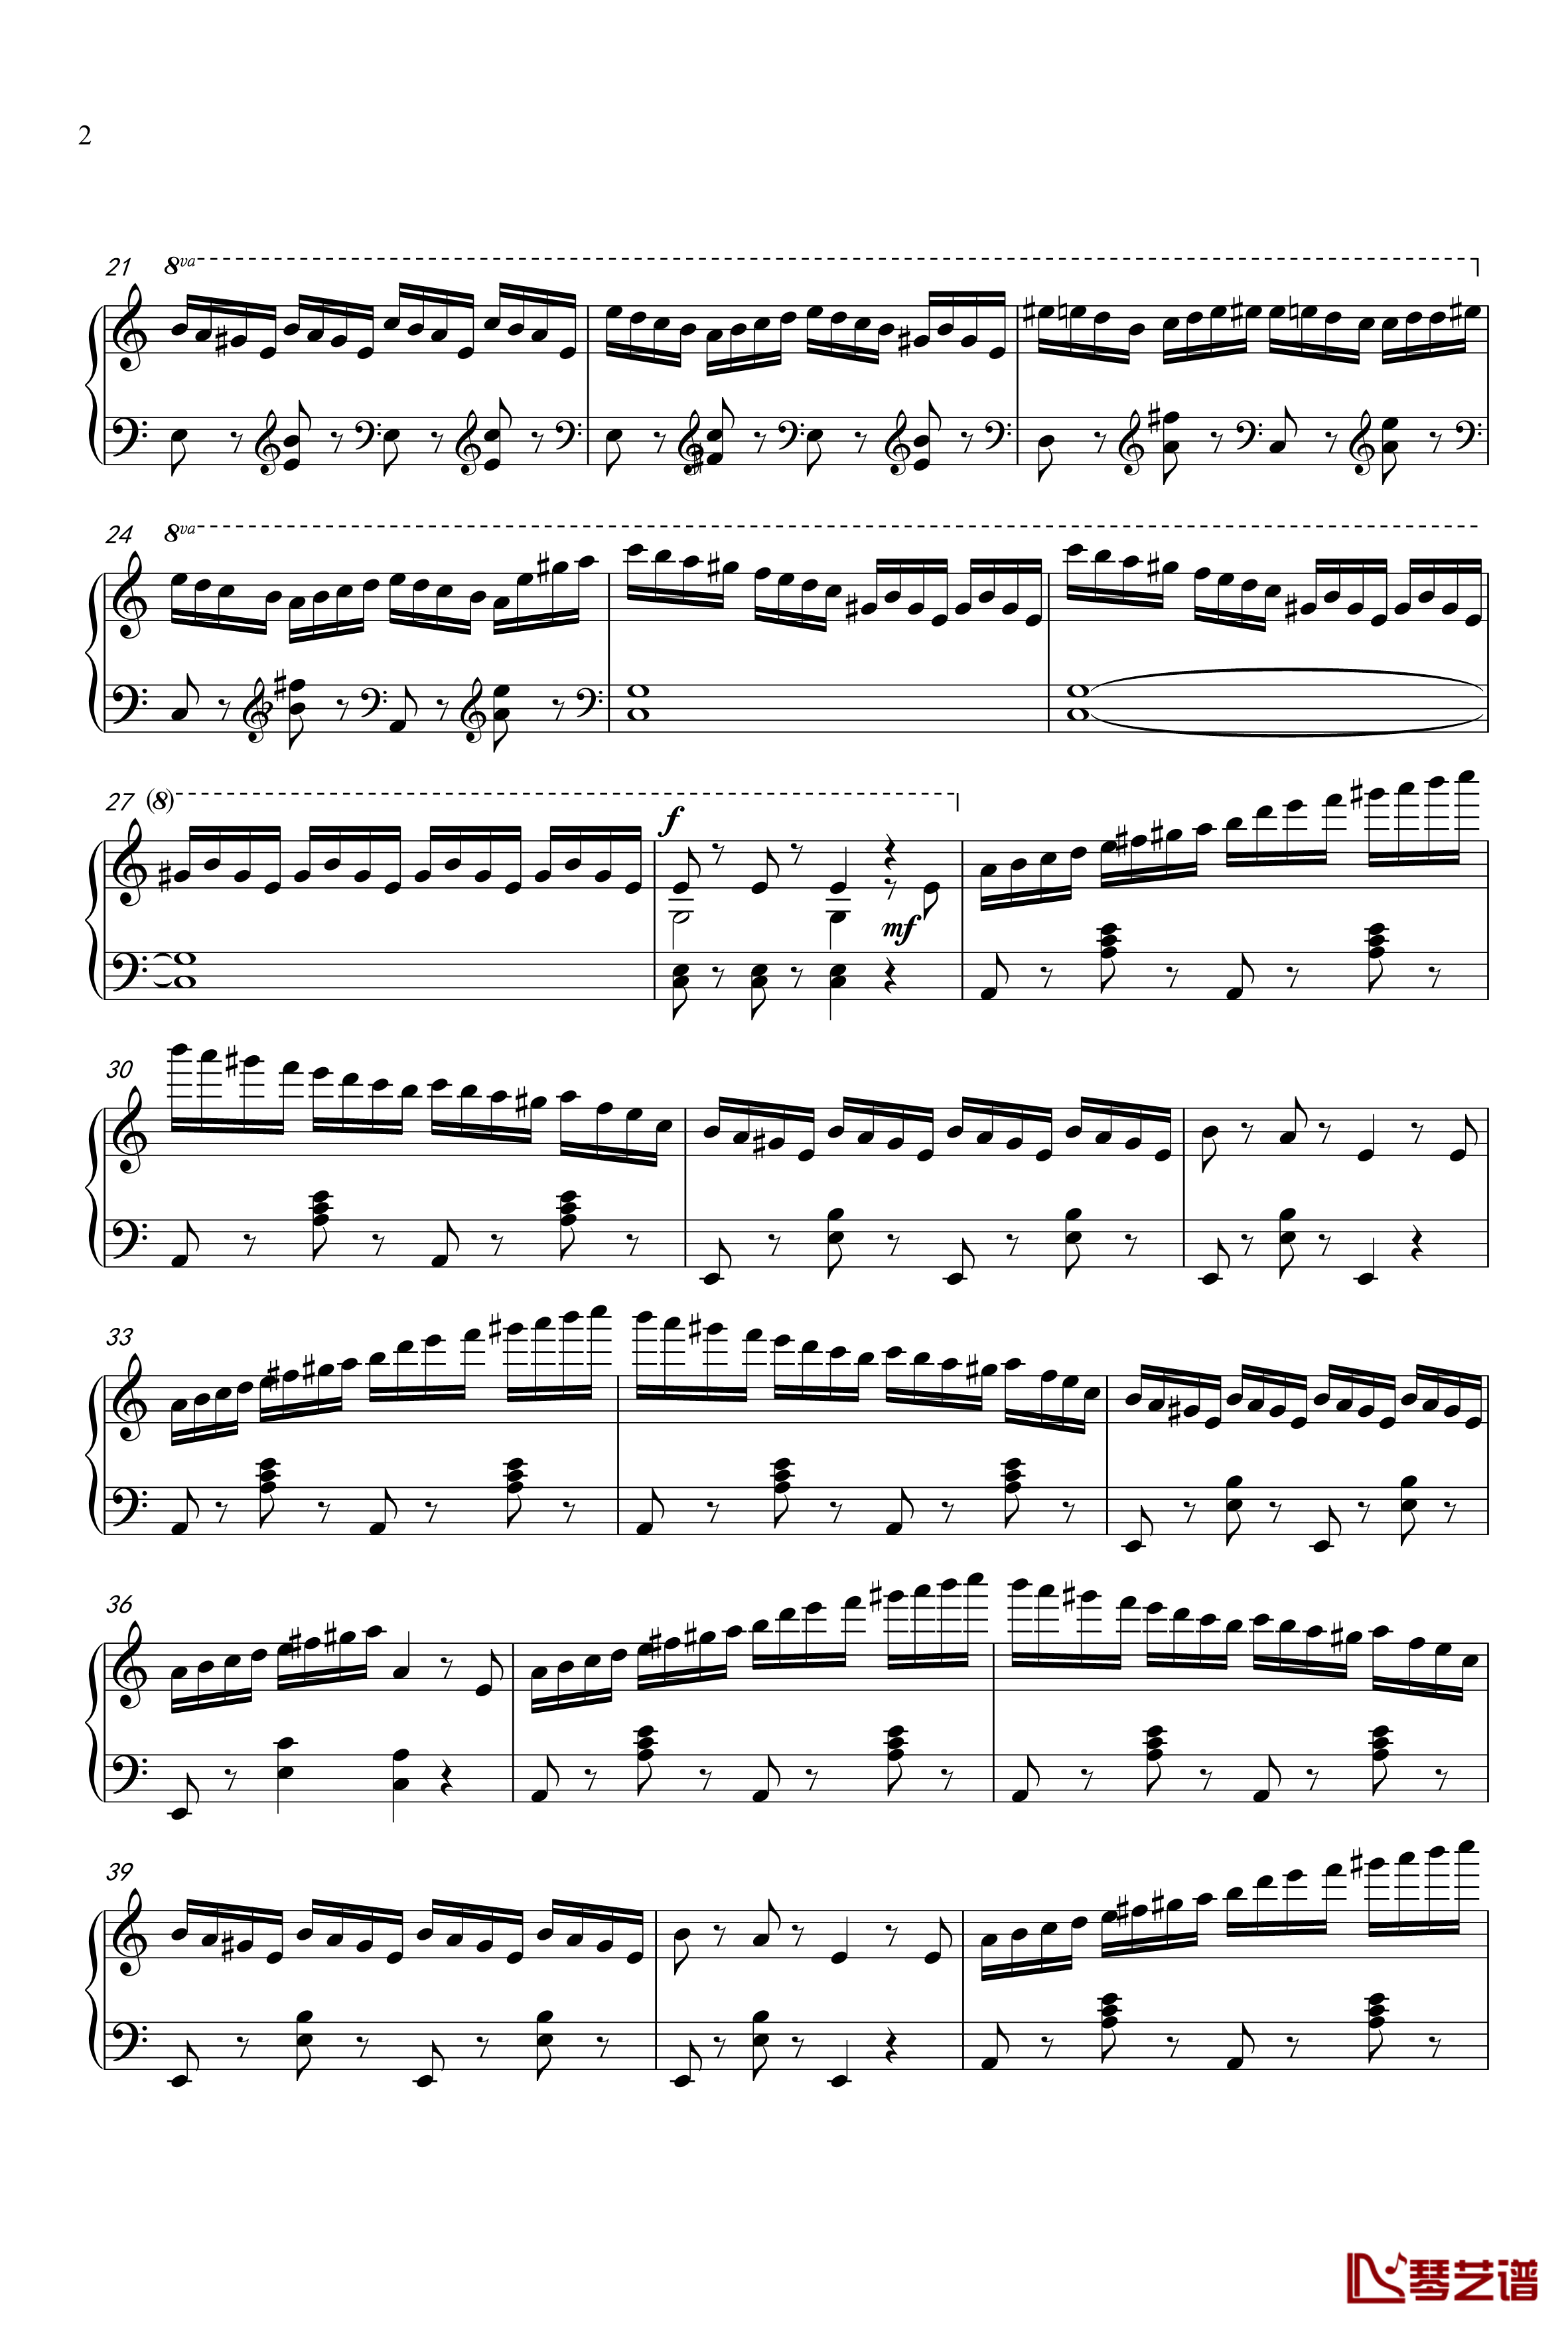 练习曲钢琴谱-zd202